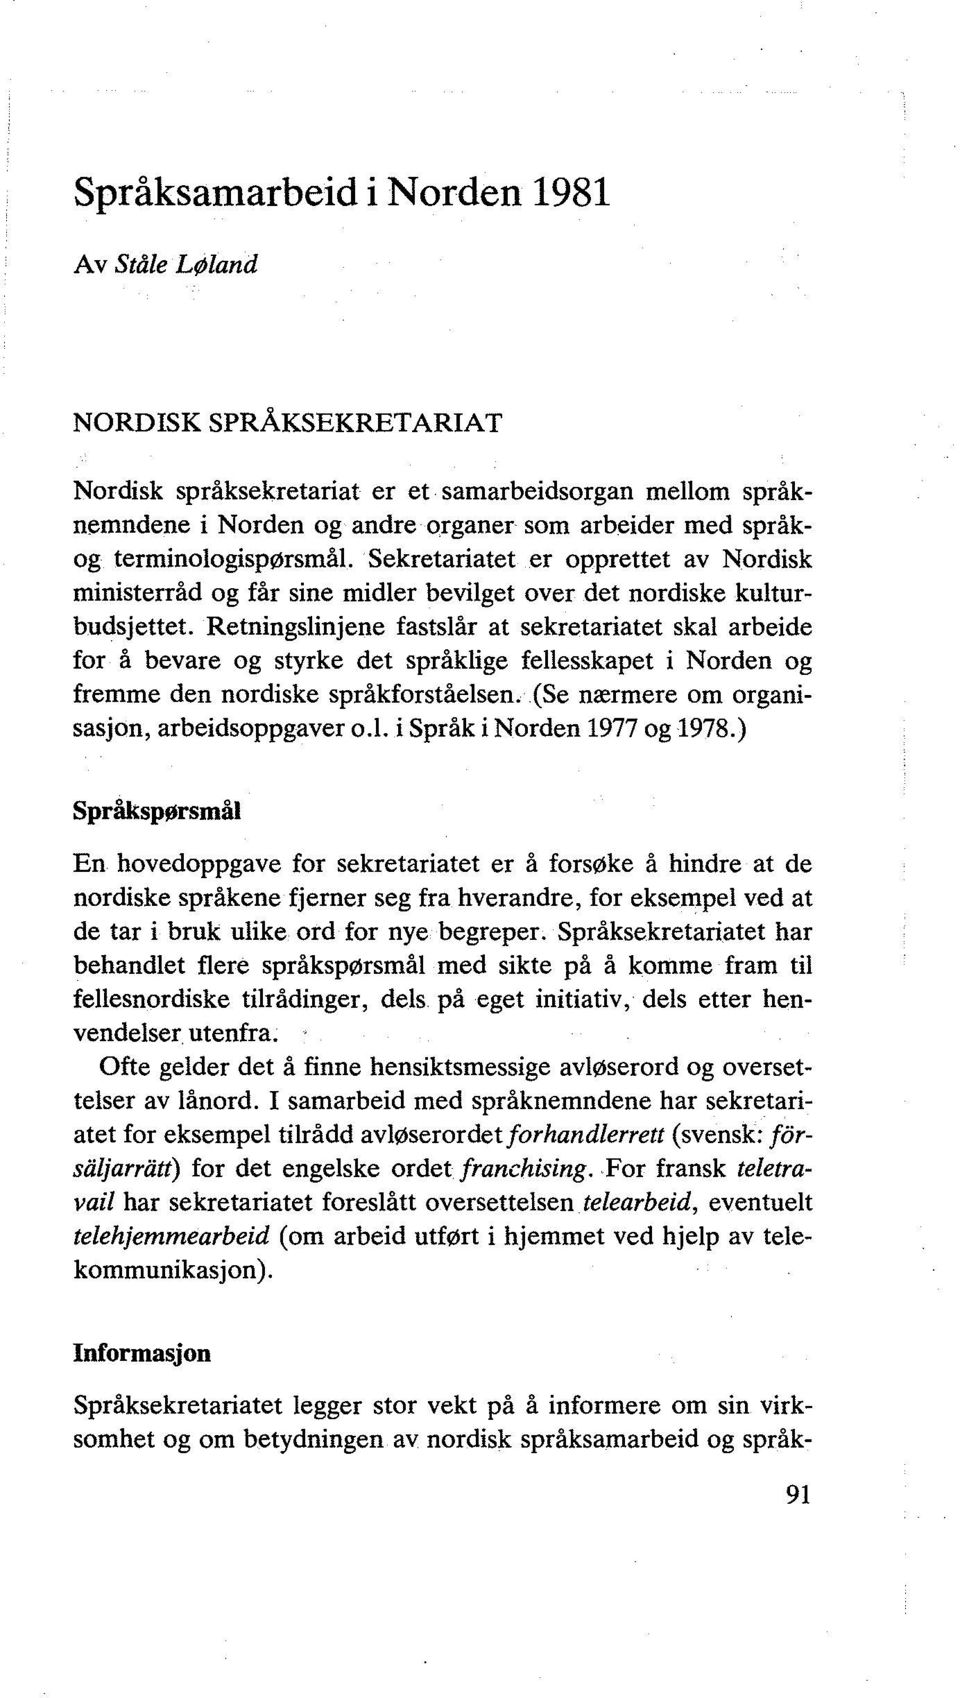 Retningslinjene fastslår at sekretariatet skal arbeide for å bevare og styrke det språklige fellesskapet i Norden og fremme den nordiske språkforståelsen.